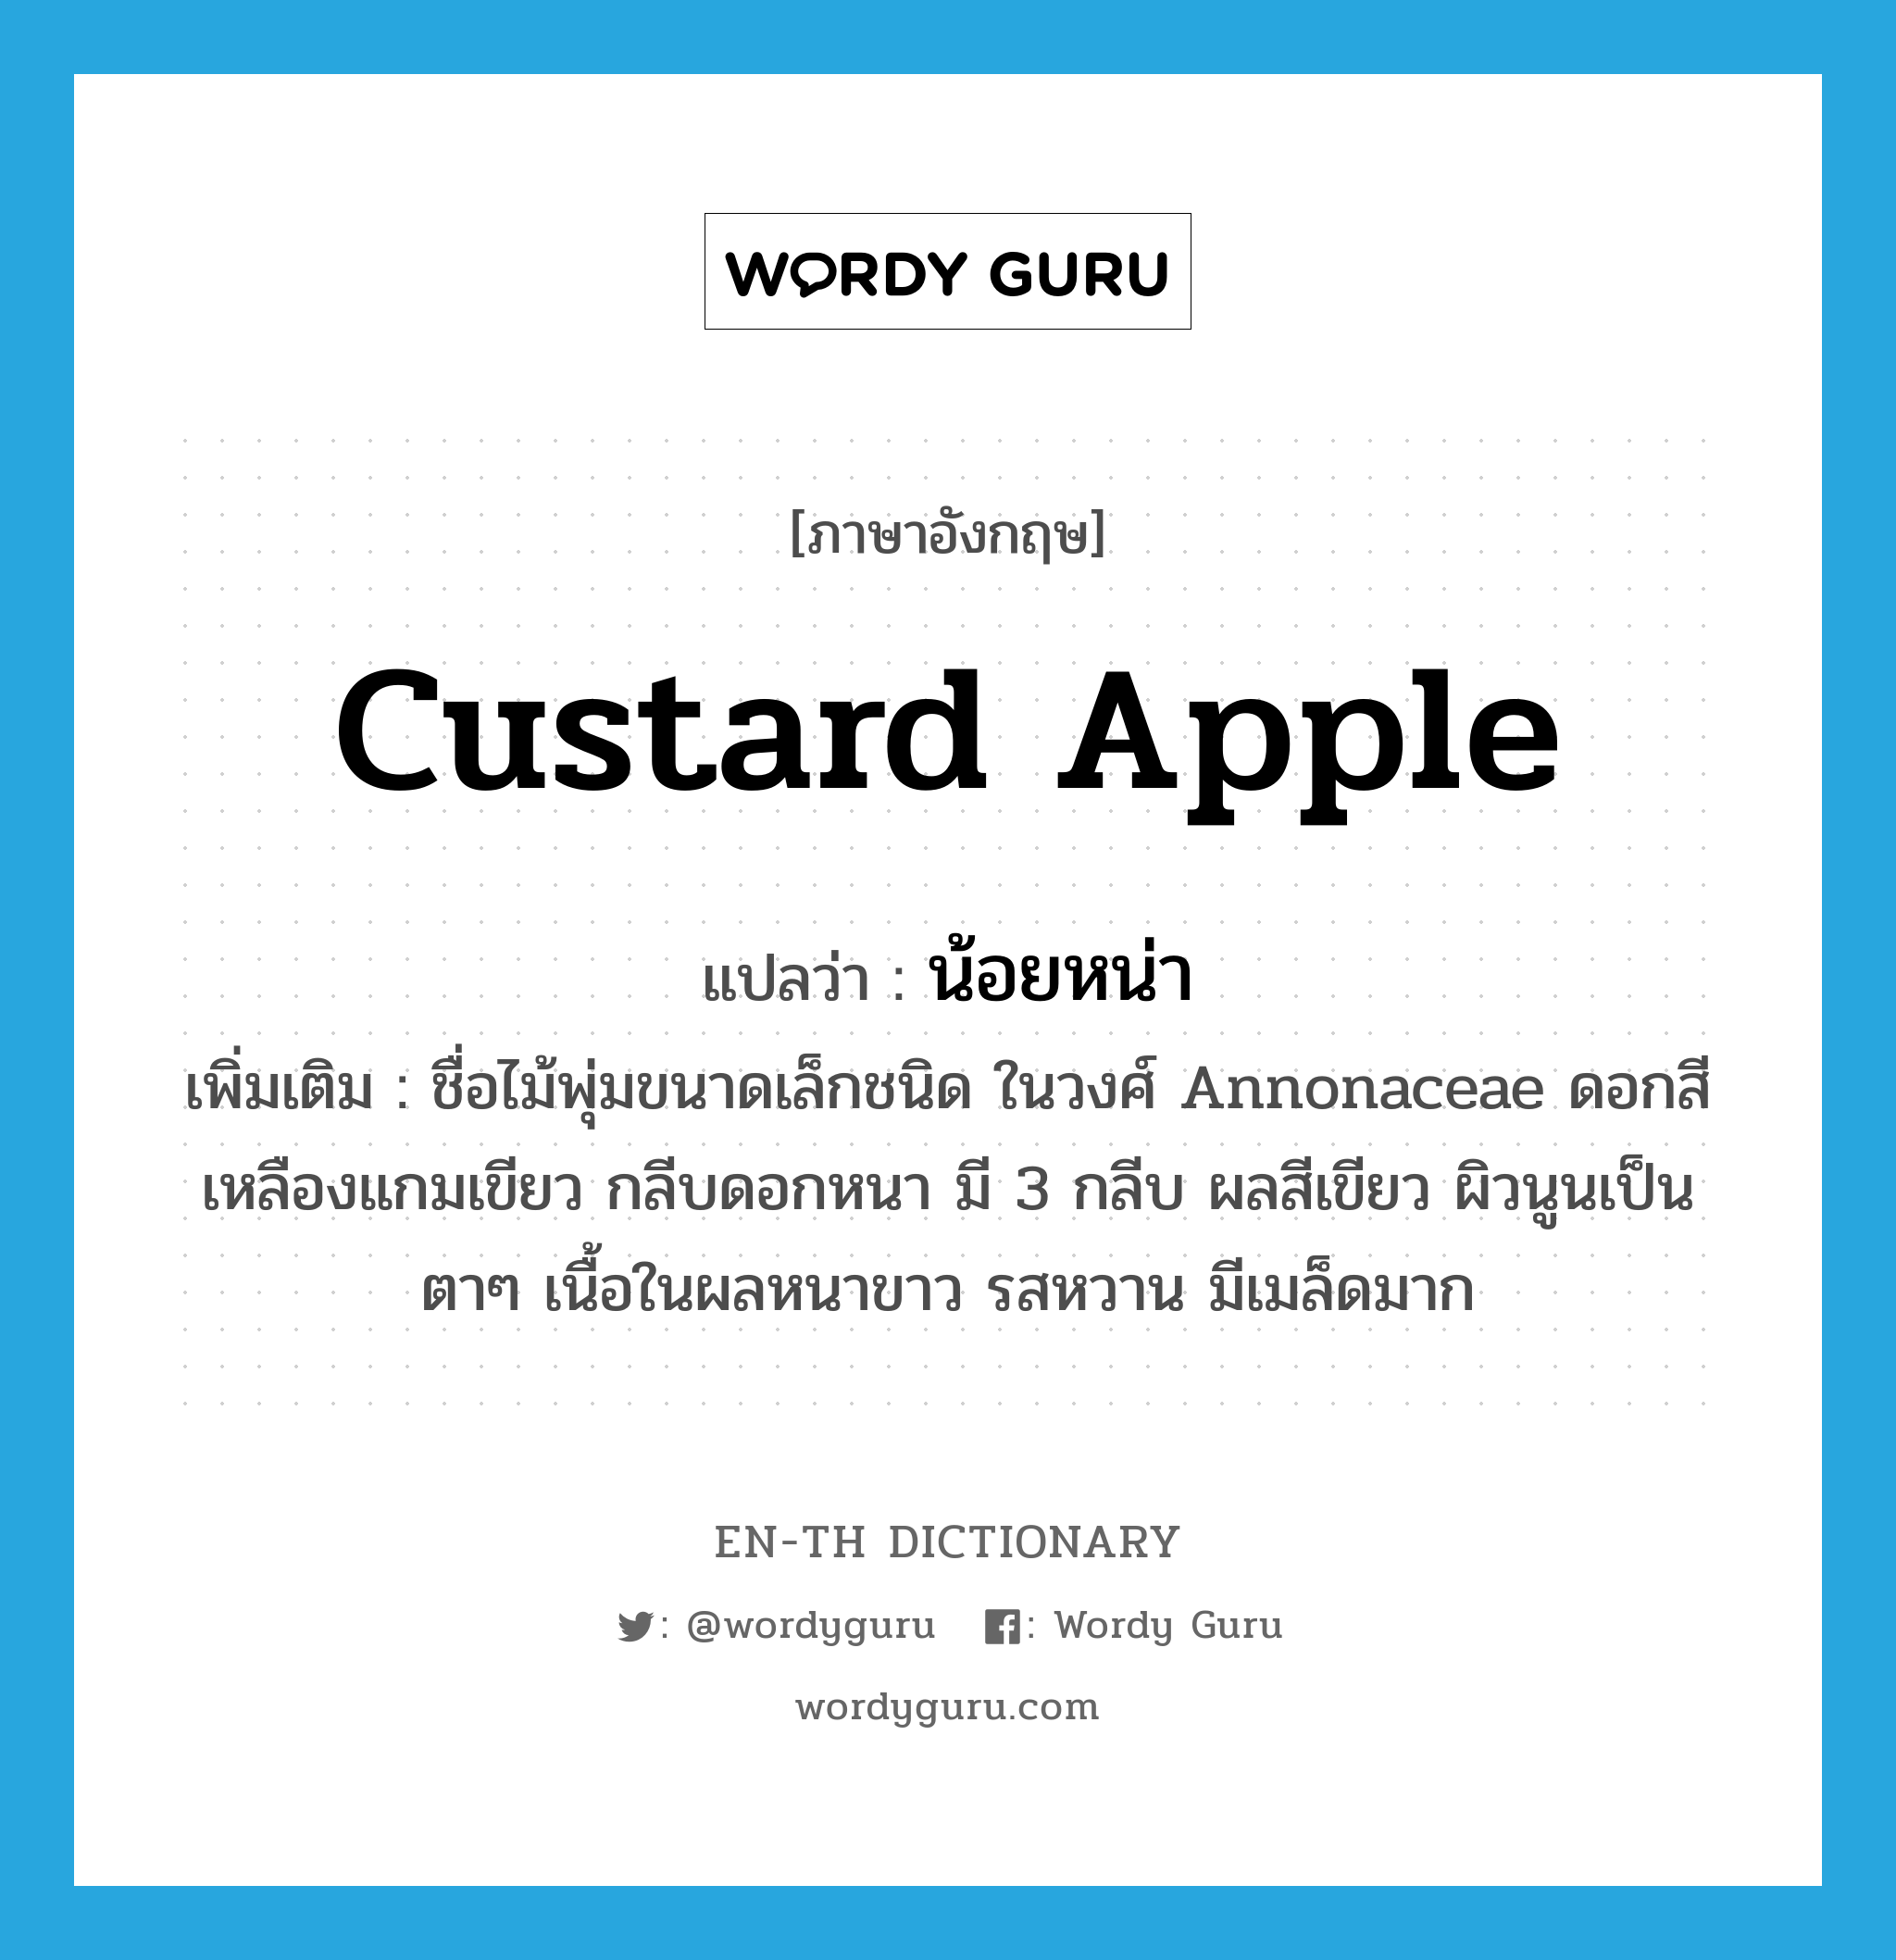 custard apple แปลว่า?, คำศัพท์ภาษาอังกฤษ custard apple แปลว่า น้อยหน่า ประเภท N เพิ่มเติม ชื่อไม้พุ่มขนาดเล็กชนิด ในวงศ์ Annonaceae ดอกสีเหลืองแกมเขียว กลีบดอกหนา มี 3 กลีบ ผลสีเขียว ผิวนูนเป็นตาๆ เนื้อในผลหนาขาว รสหวาน มีเมล็ดมาก หมวด N